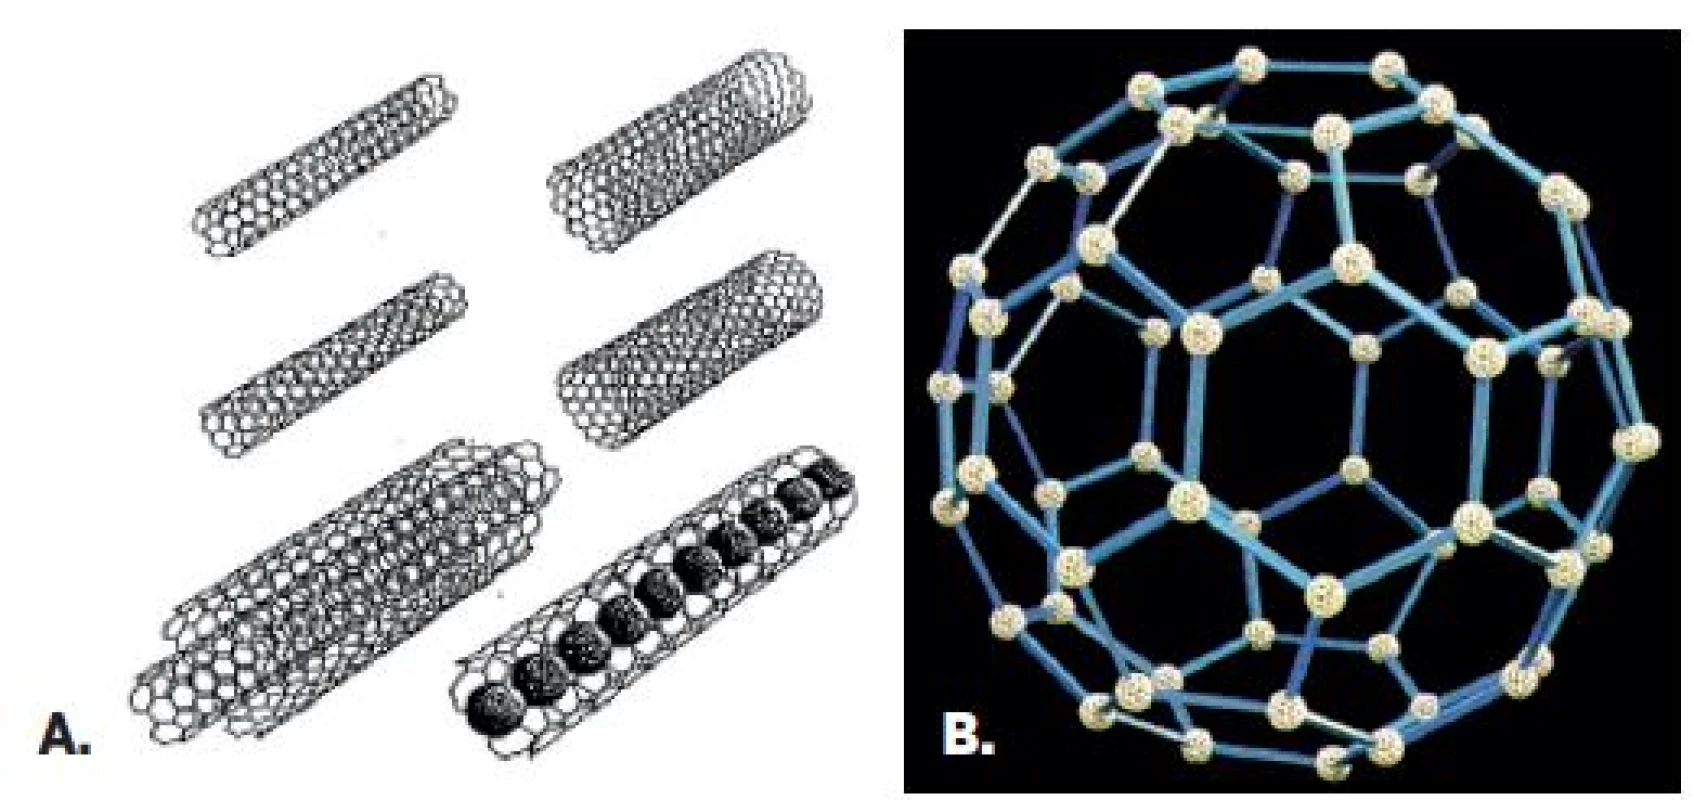 Príklady niektorých tvarov nanočastíc
Vybrané druhy a tvary nanočastíc (A – uhlíkové nanorúrky, B – fulerény).